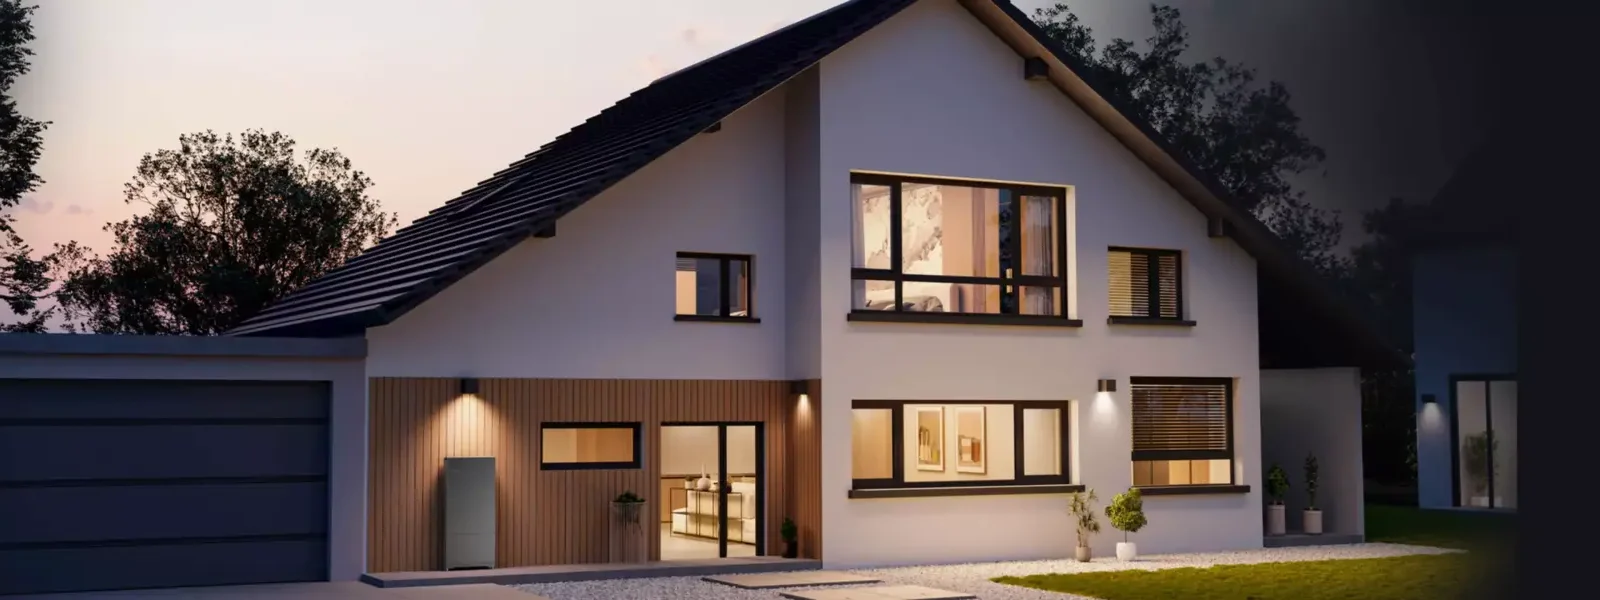 Haus beleuchtet, aussen an Holzfassade steht Ecoflow Heimspeicher